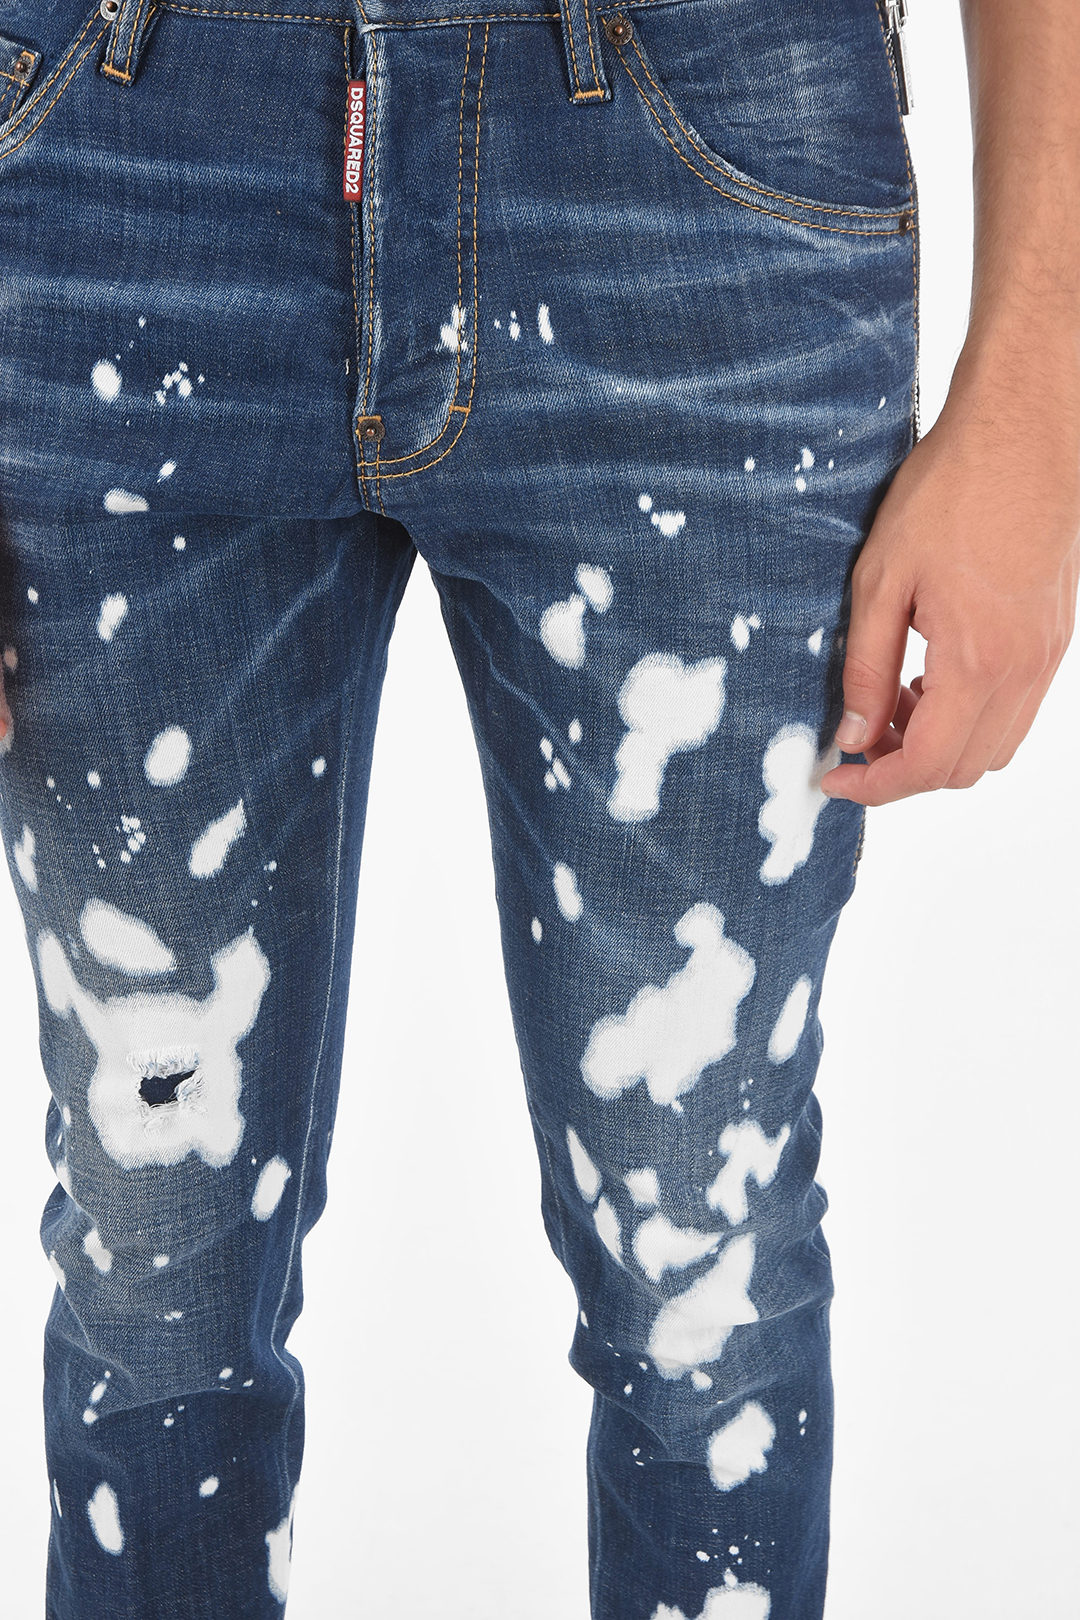 Dsquared2 15cm Acid Wash Effect COOL GUY Jeans men - Glamood Outlet